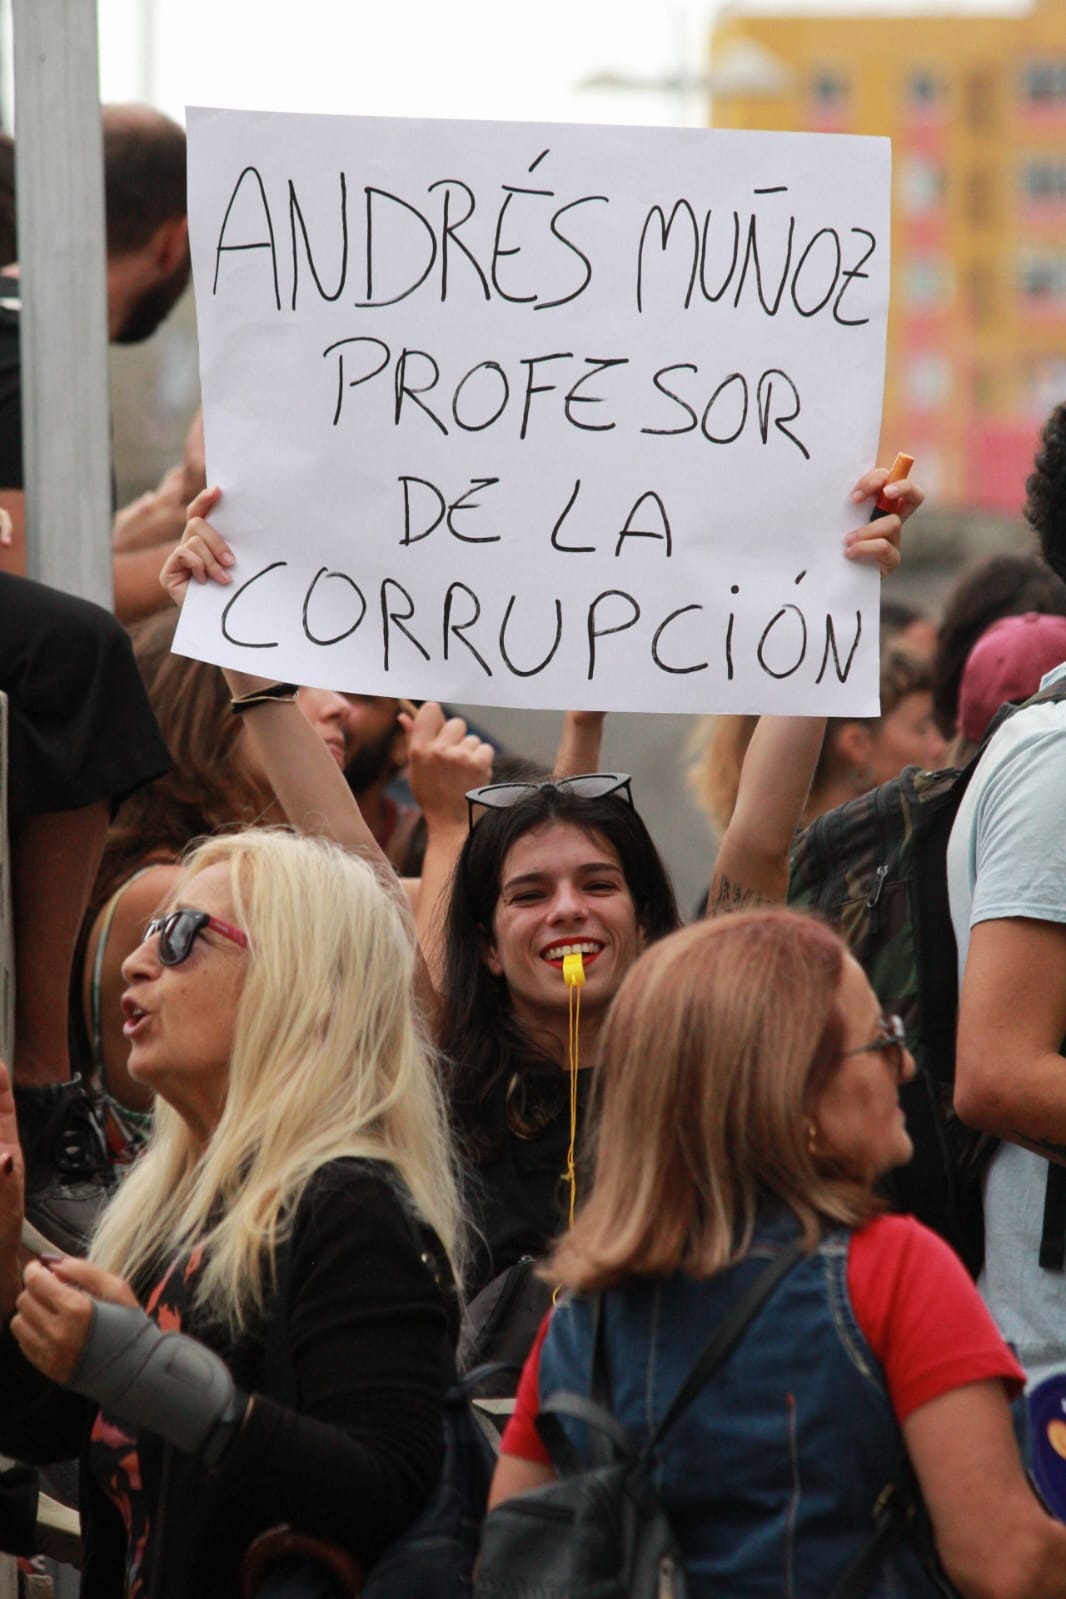 Una manifestante sostiene una pancarta contra Andrés Muñoz./ Álvaro Oliver (AH)